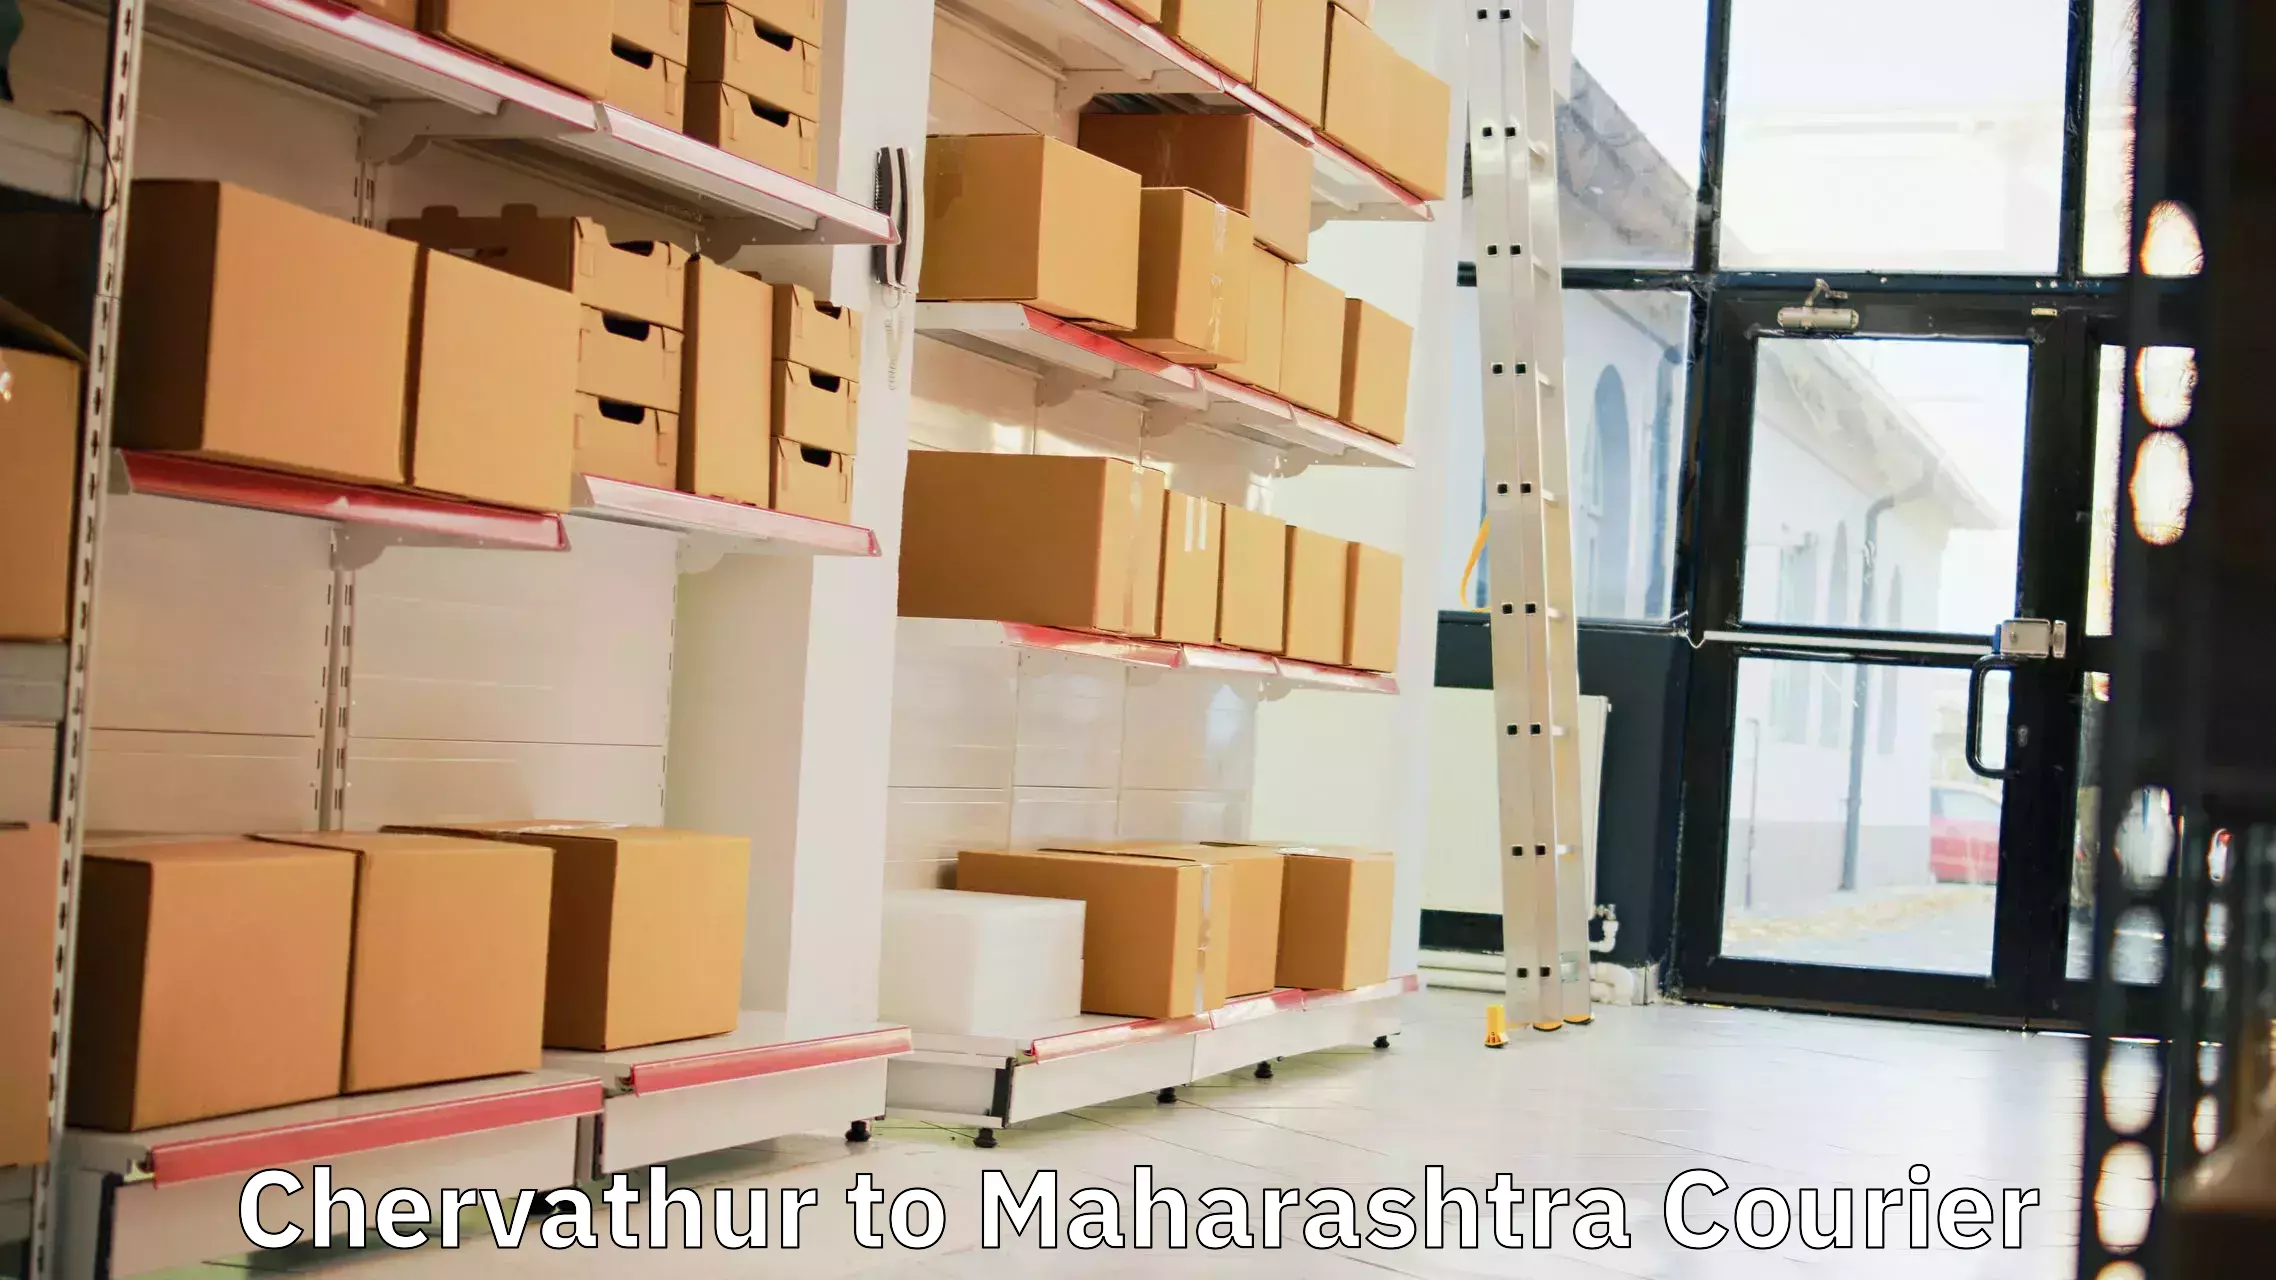 Reliable parcel services Chervathur to Aurangabad